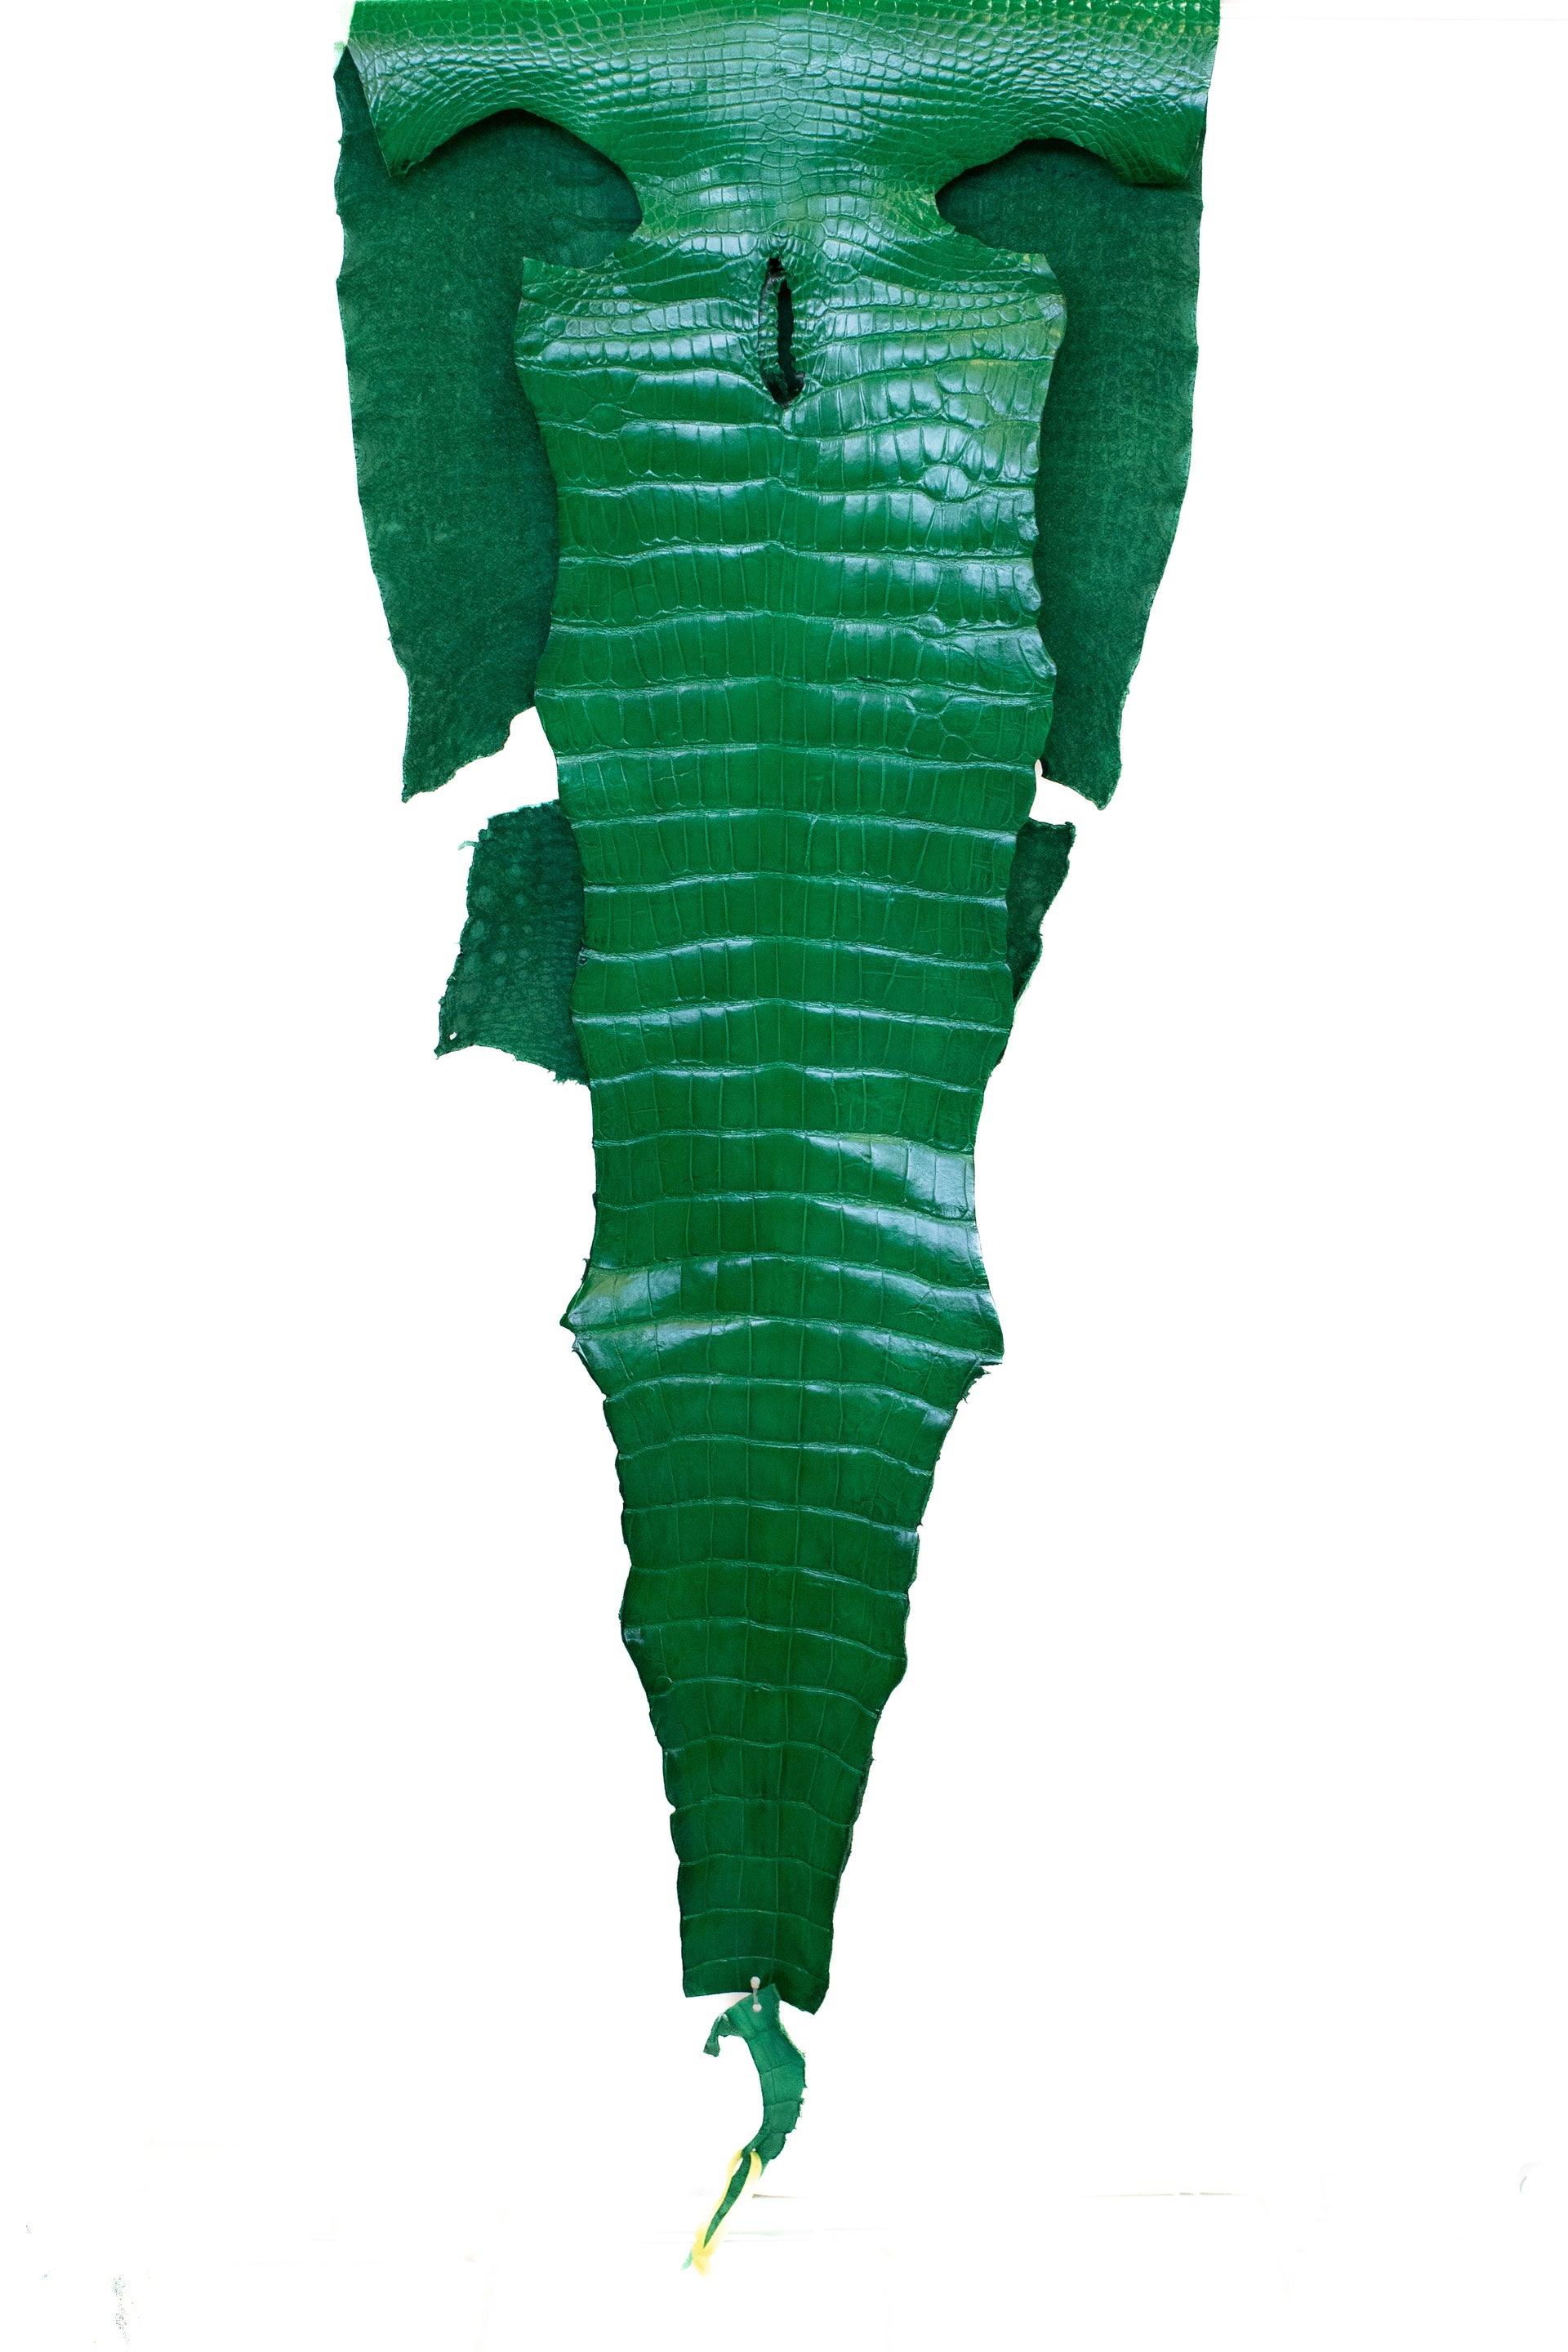 52 cm Grade 3/4 Libra Green Millennium Wild American Alligator Leather - Tag: LA22-0003944